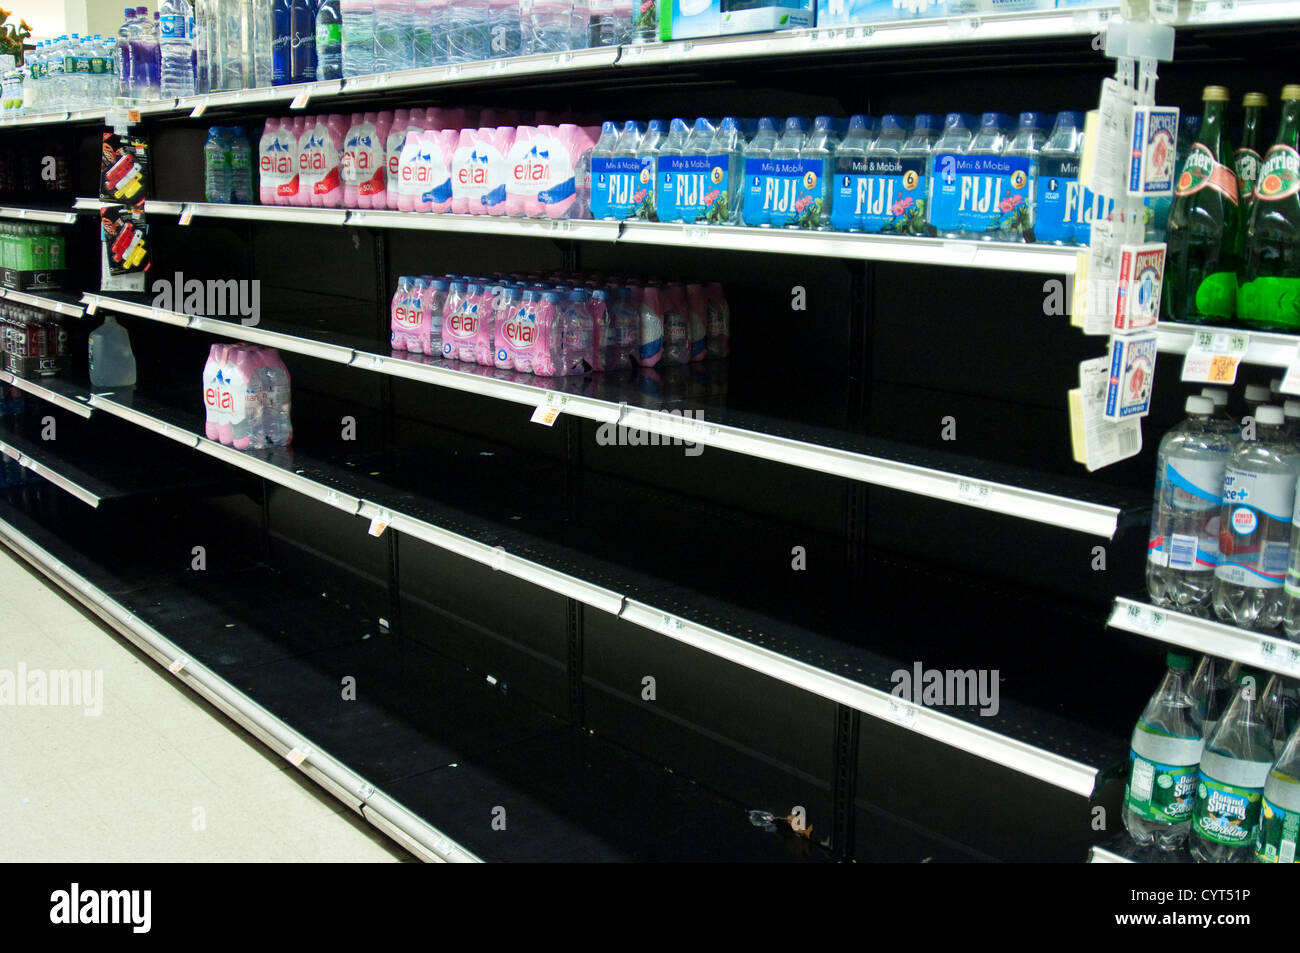 Los estantes vacíos en Kings supermercado de Cresskill, NJ, pruebas de compras de emergencia después del huracán que azotó Arena Oct 2012. Foto de stock